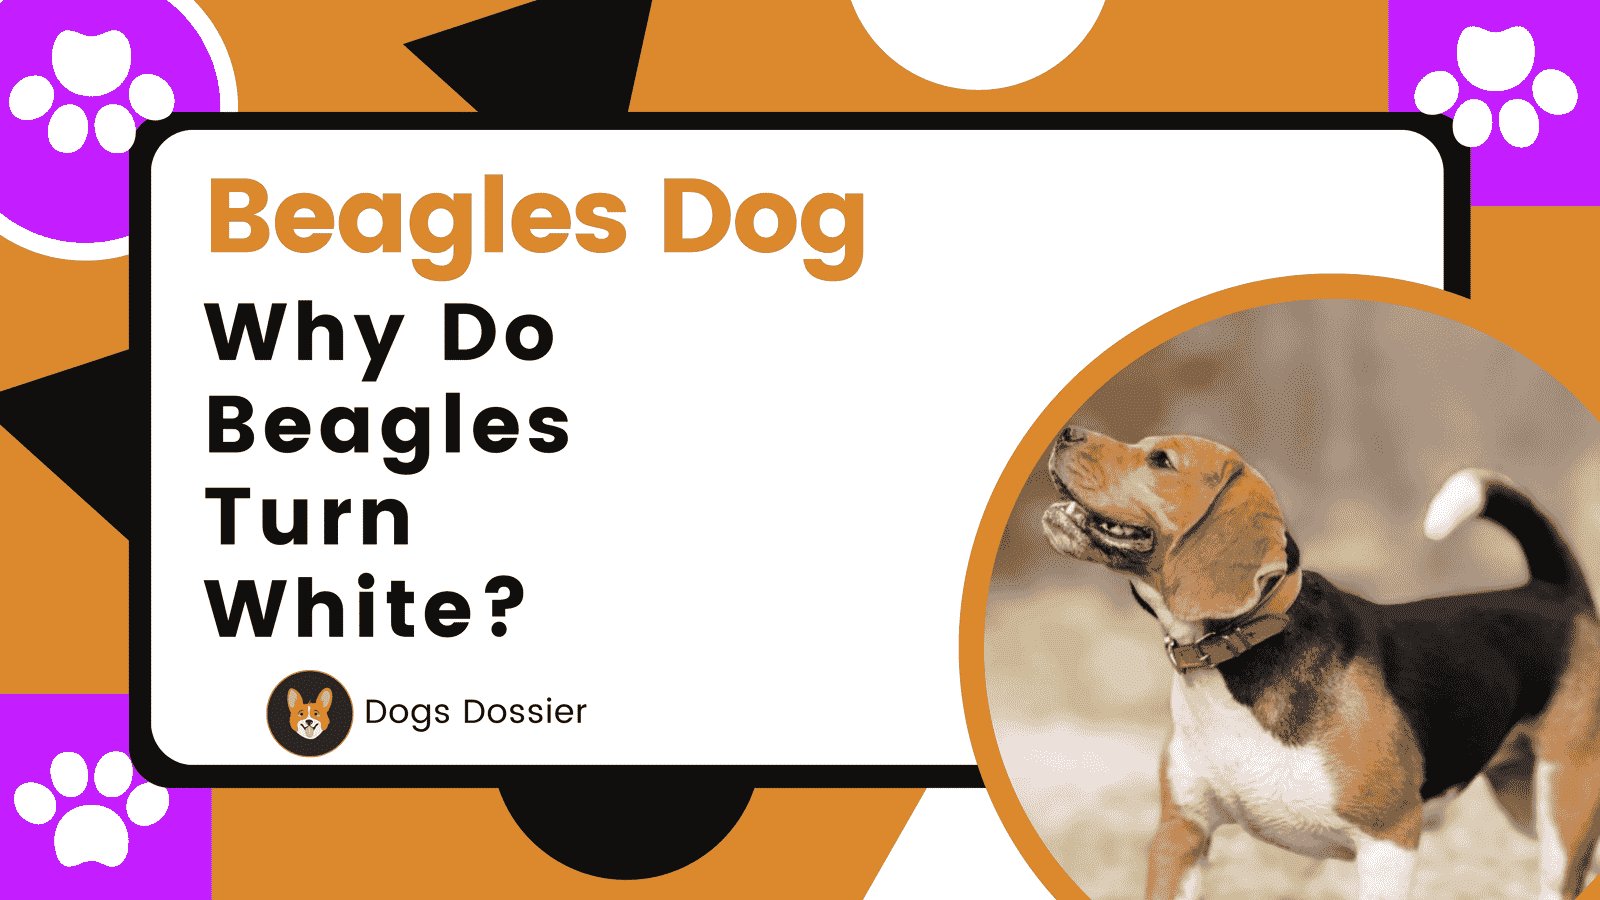 Why Do Beagles Turn White?